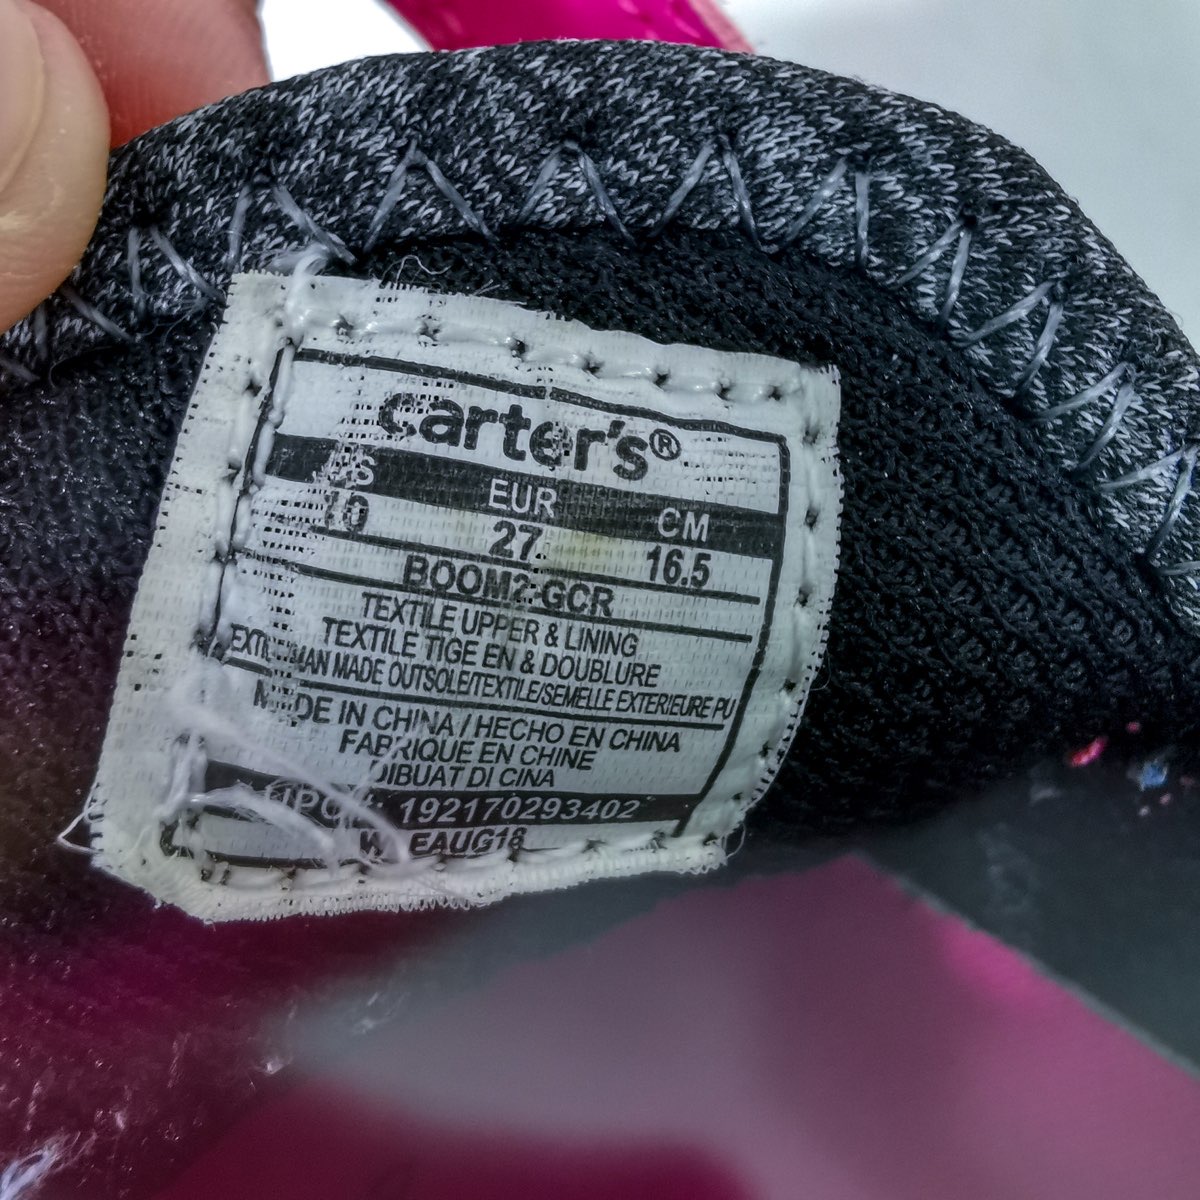 carter's รองเท้าผ้าใบสีดำพื้นสีชมพู Size 16.5 cm